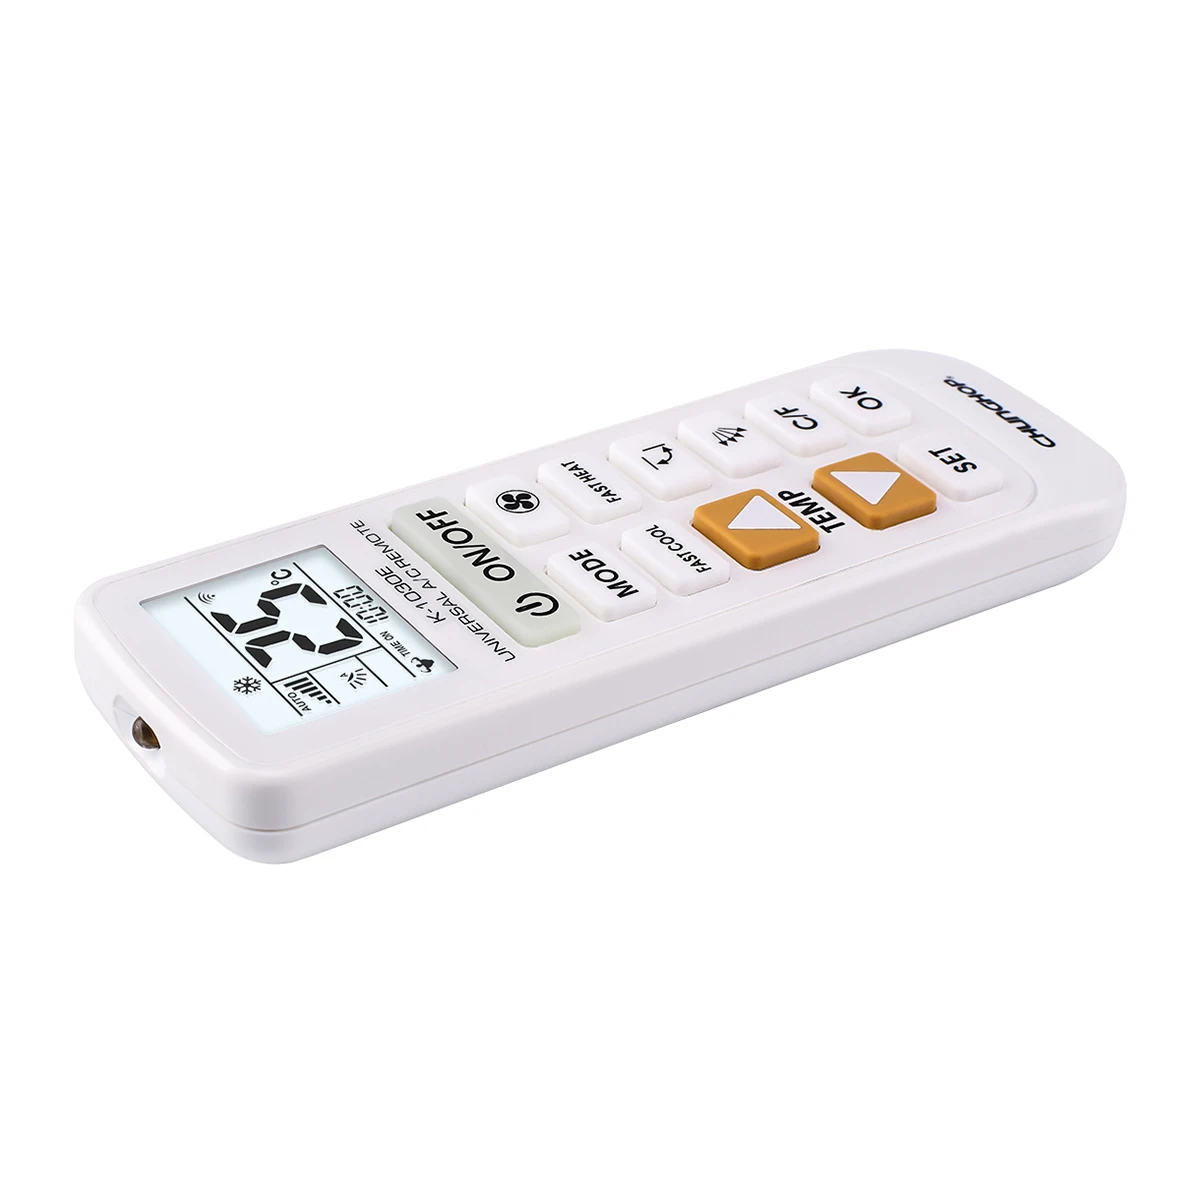 CHUNGHOP K-1030E универсальный A/C пульт дистанционного управления для кондиционера Подсветка функция большой ключ коробка пакет